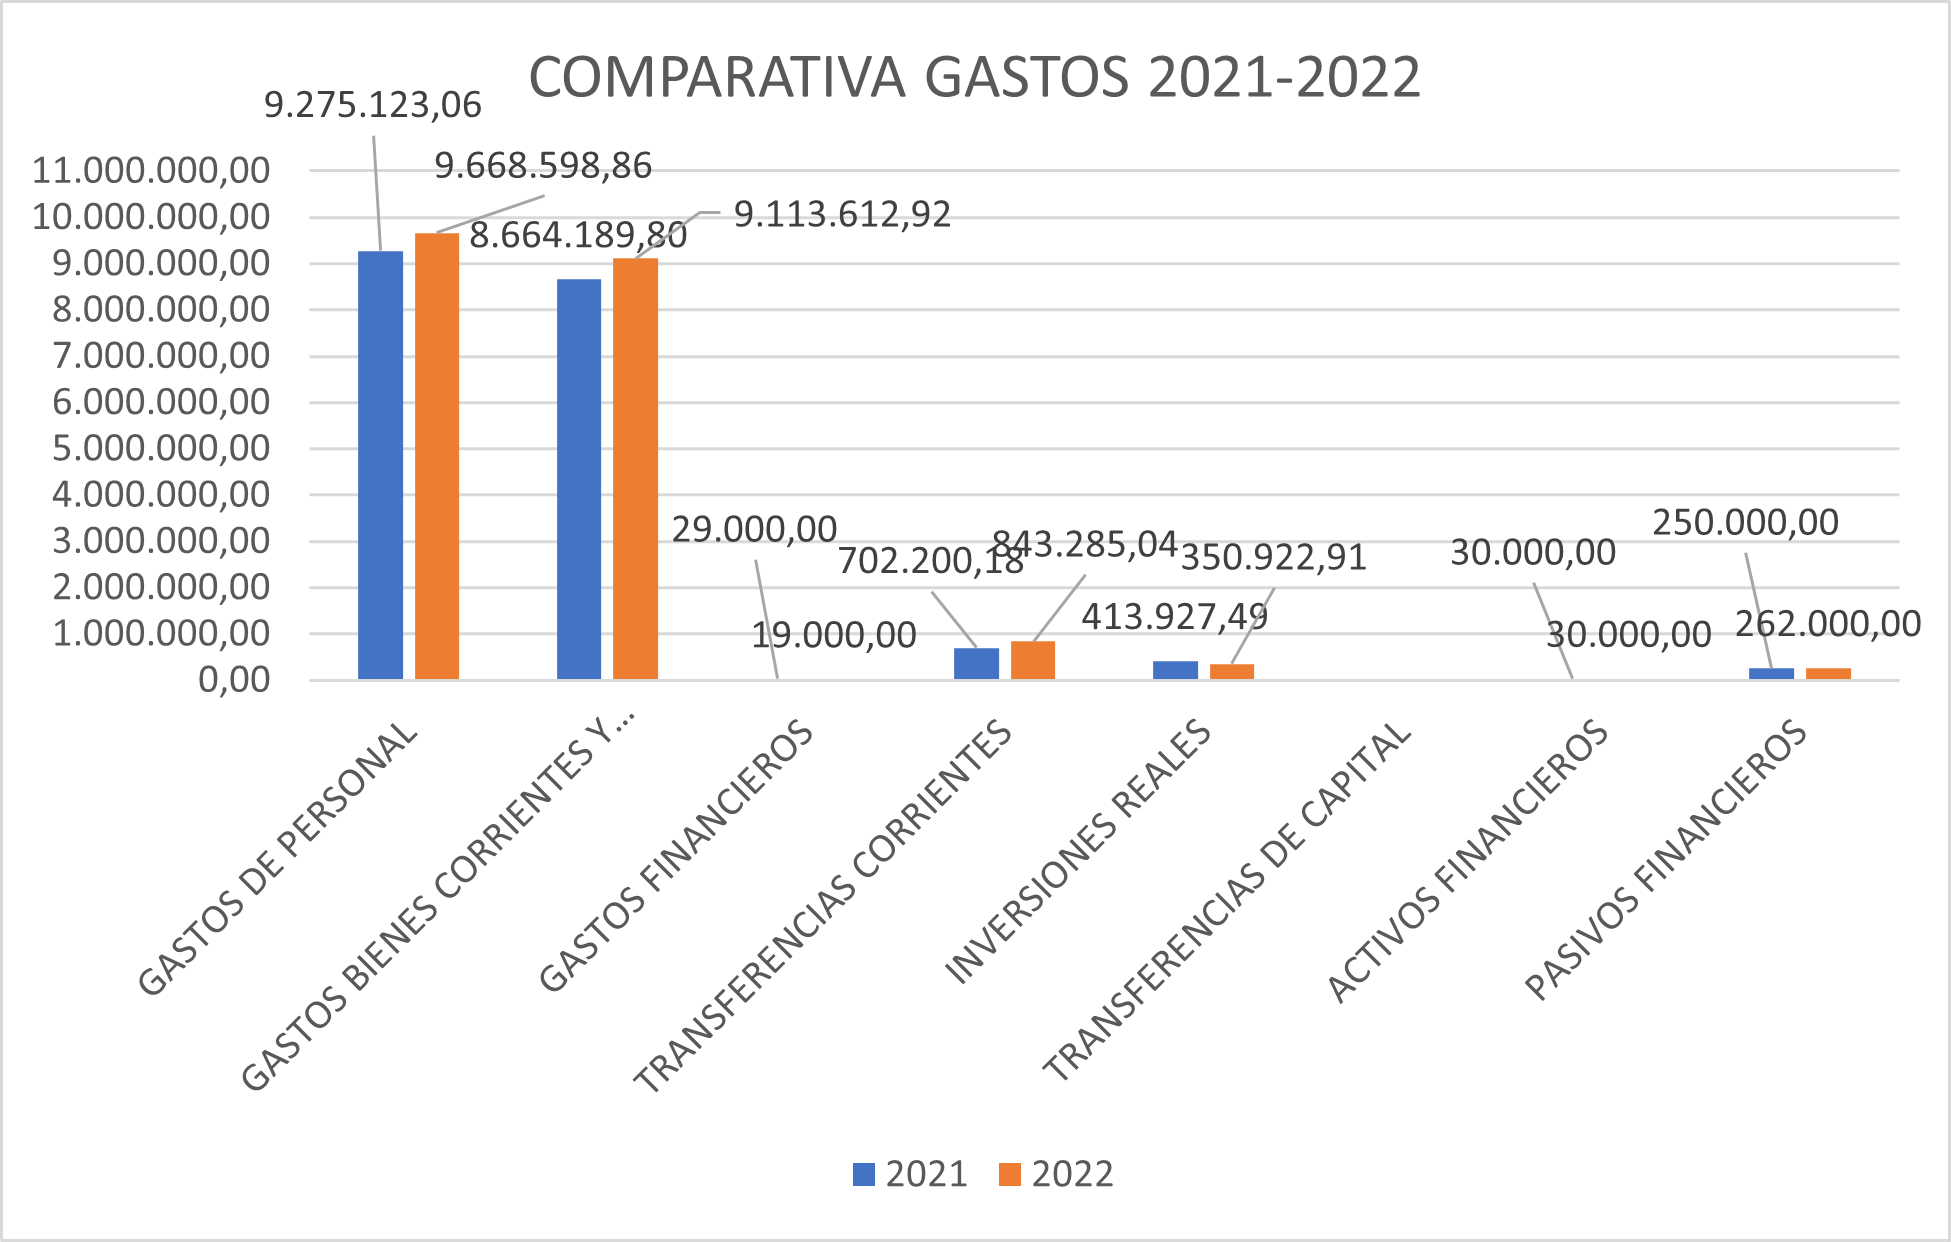 Comparativa gastos 2021-2022